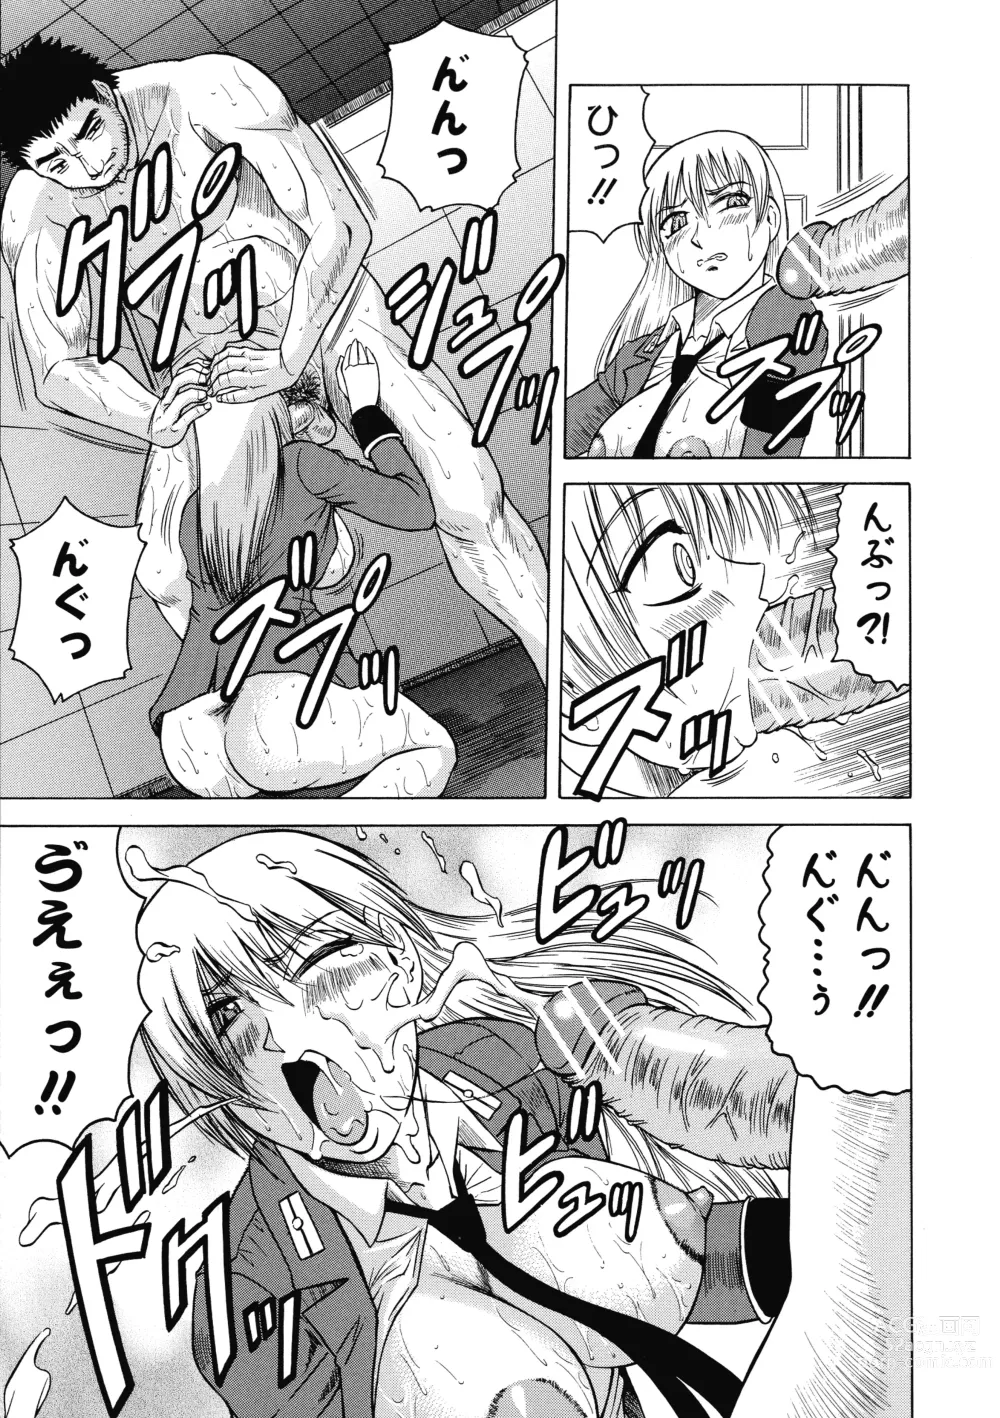 Page 157 of manga Ichigeki Nousatsu Satsuki-sensei